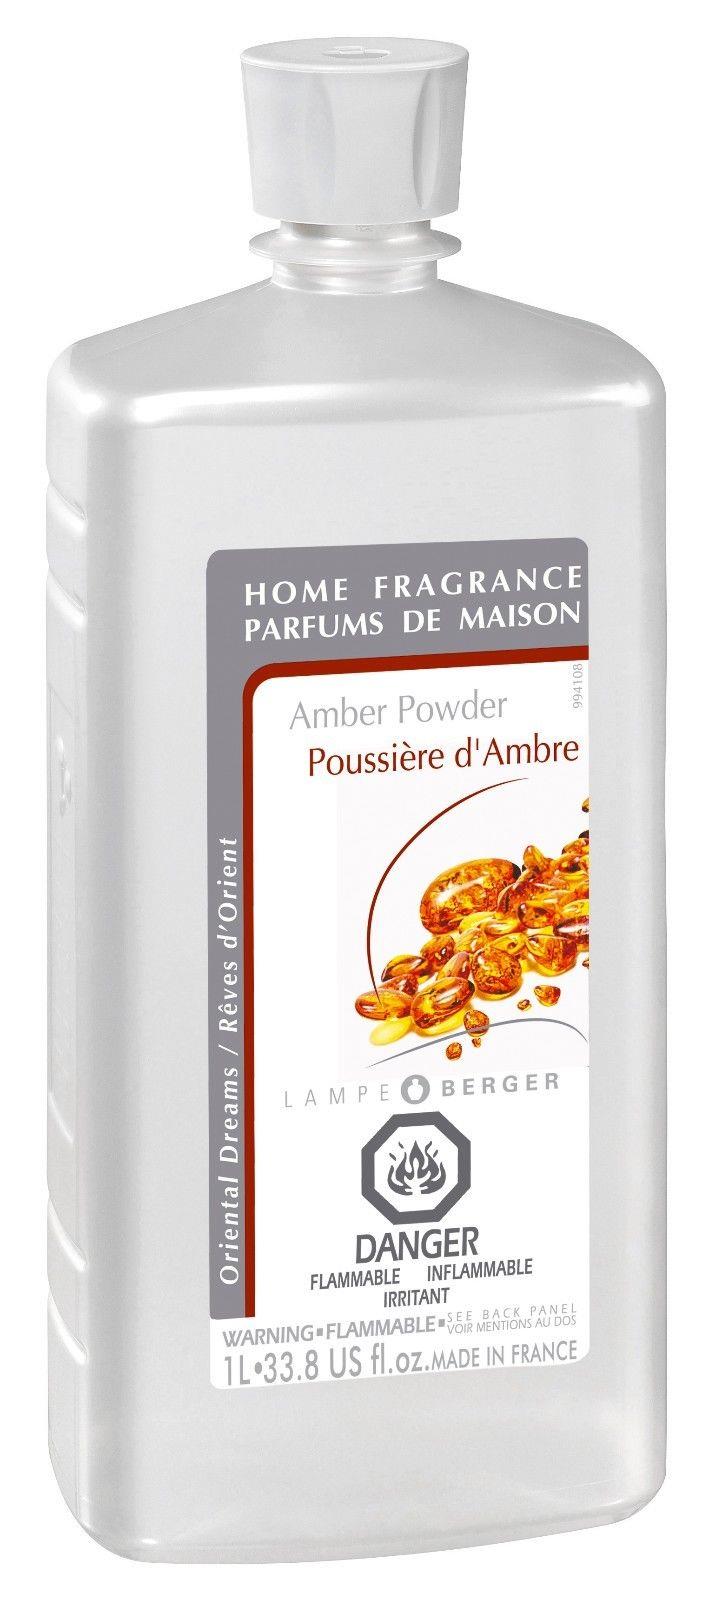 Lampe Berger Fragrance Oil  Amber Powder 1Liter 33.8oz - Free Shipping